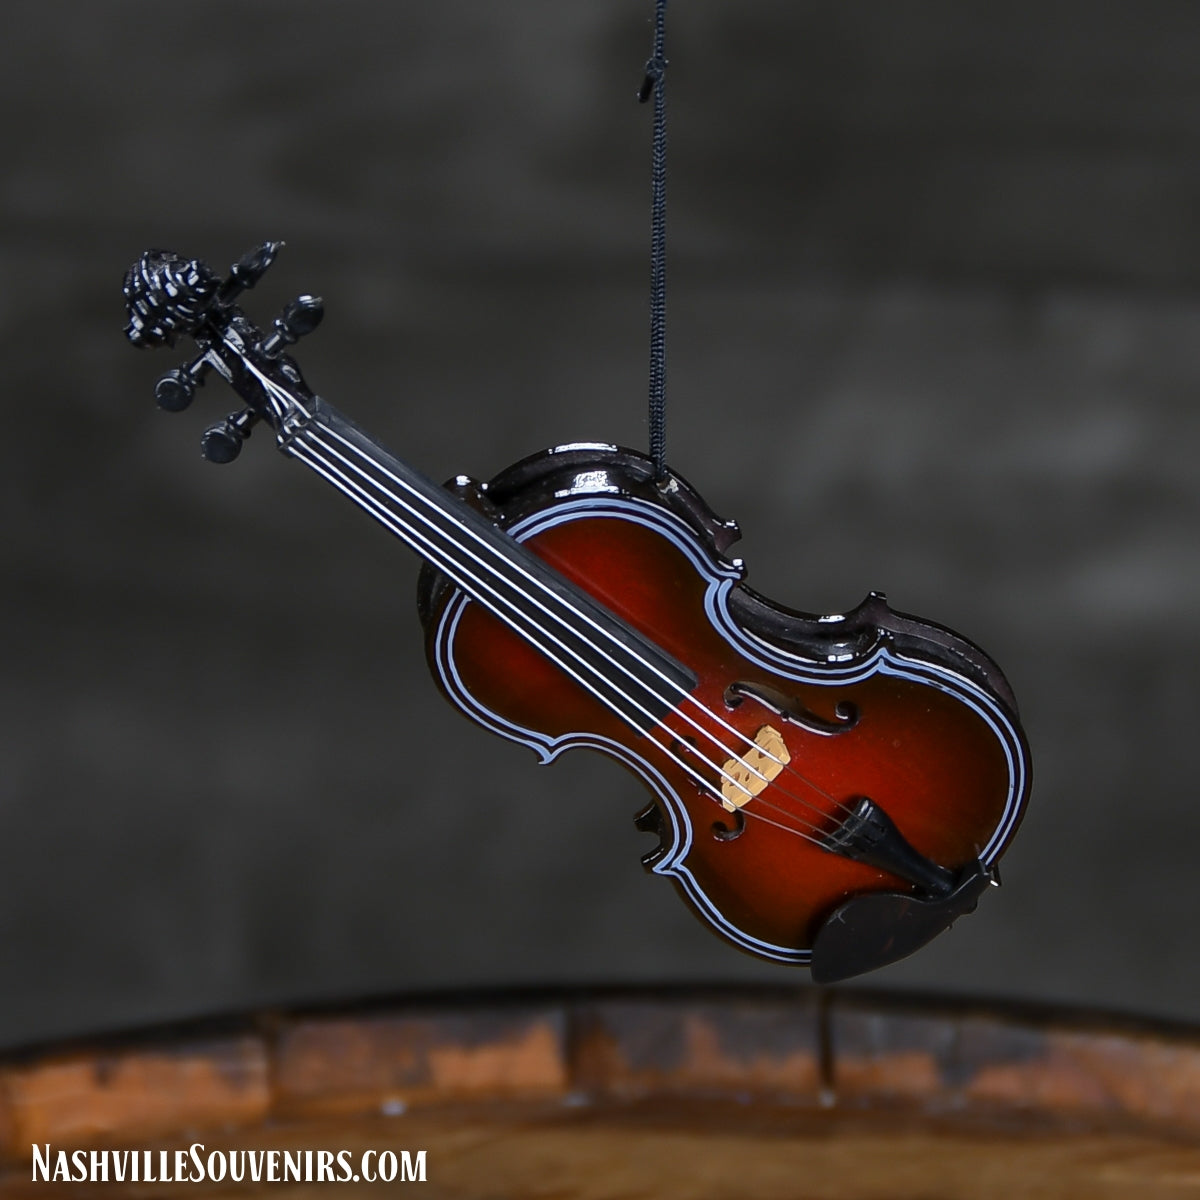 Replica Fiddle Ornament